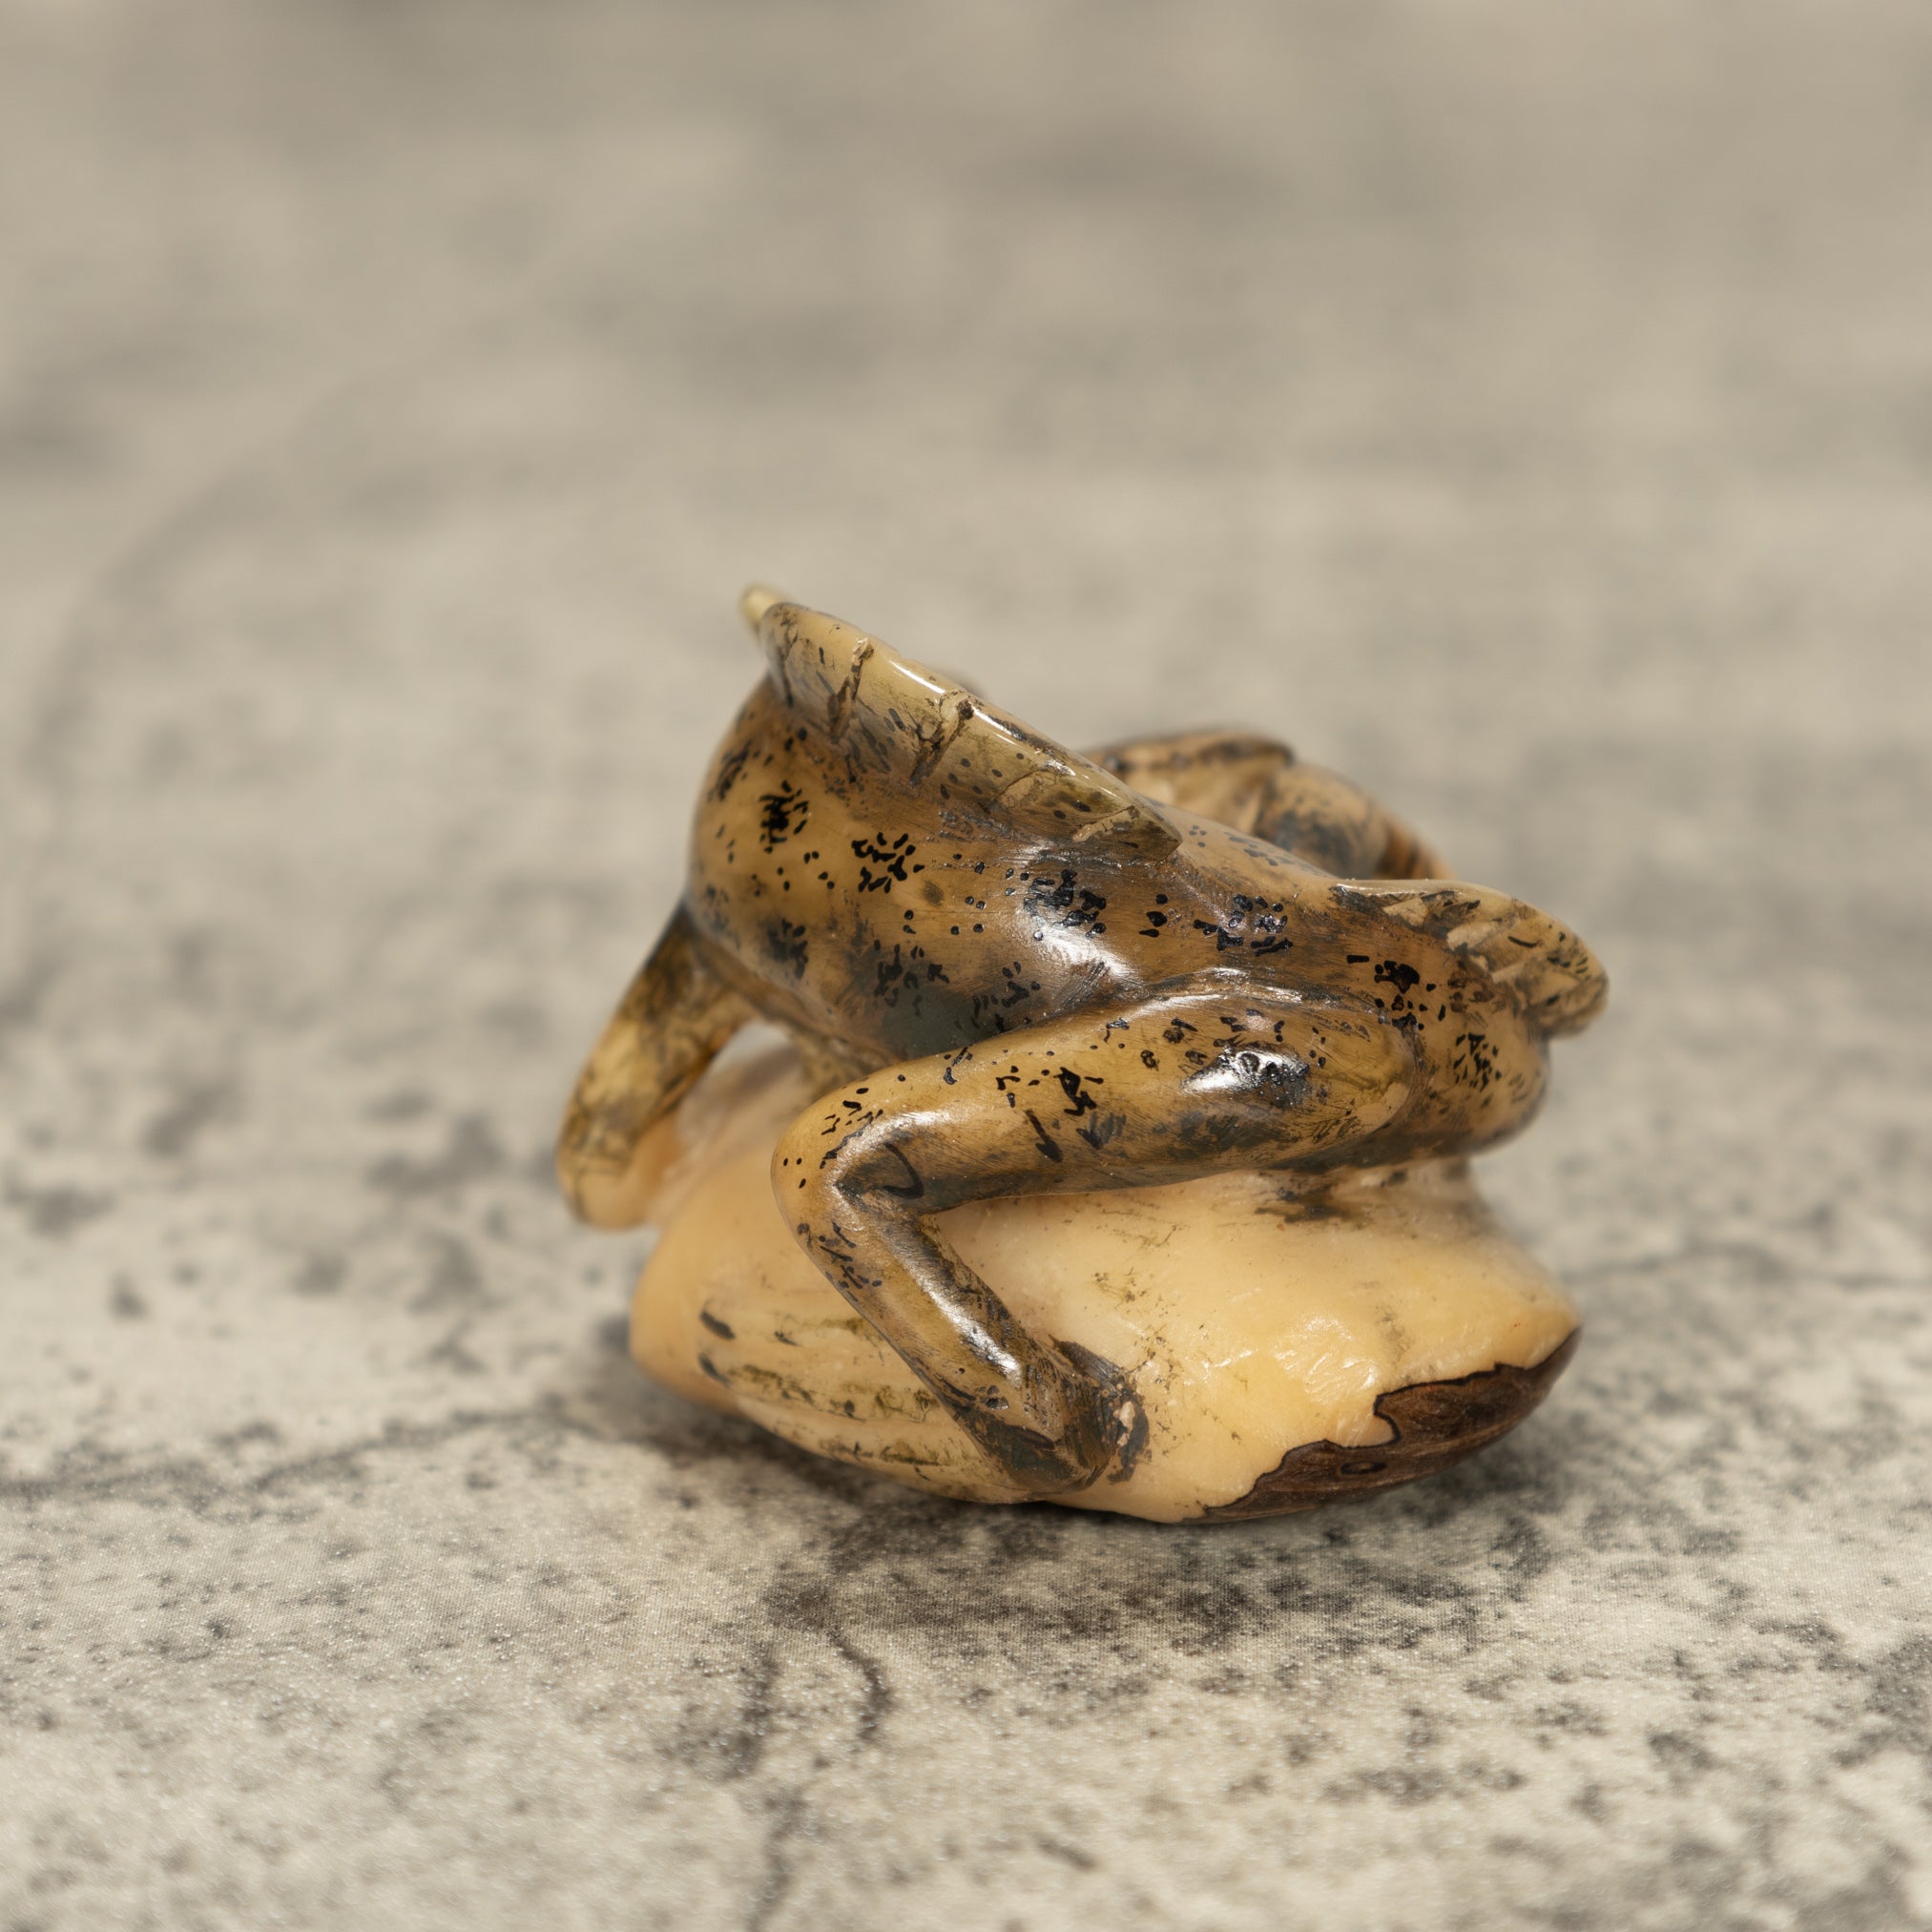 Jesus Lizard Tagua Nut Carving